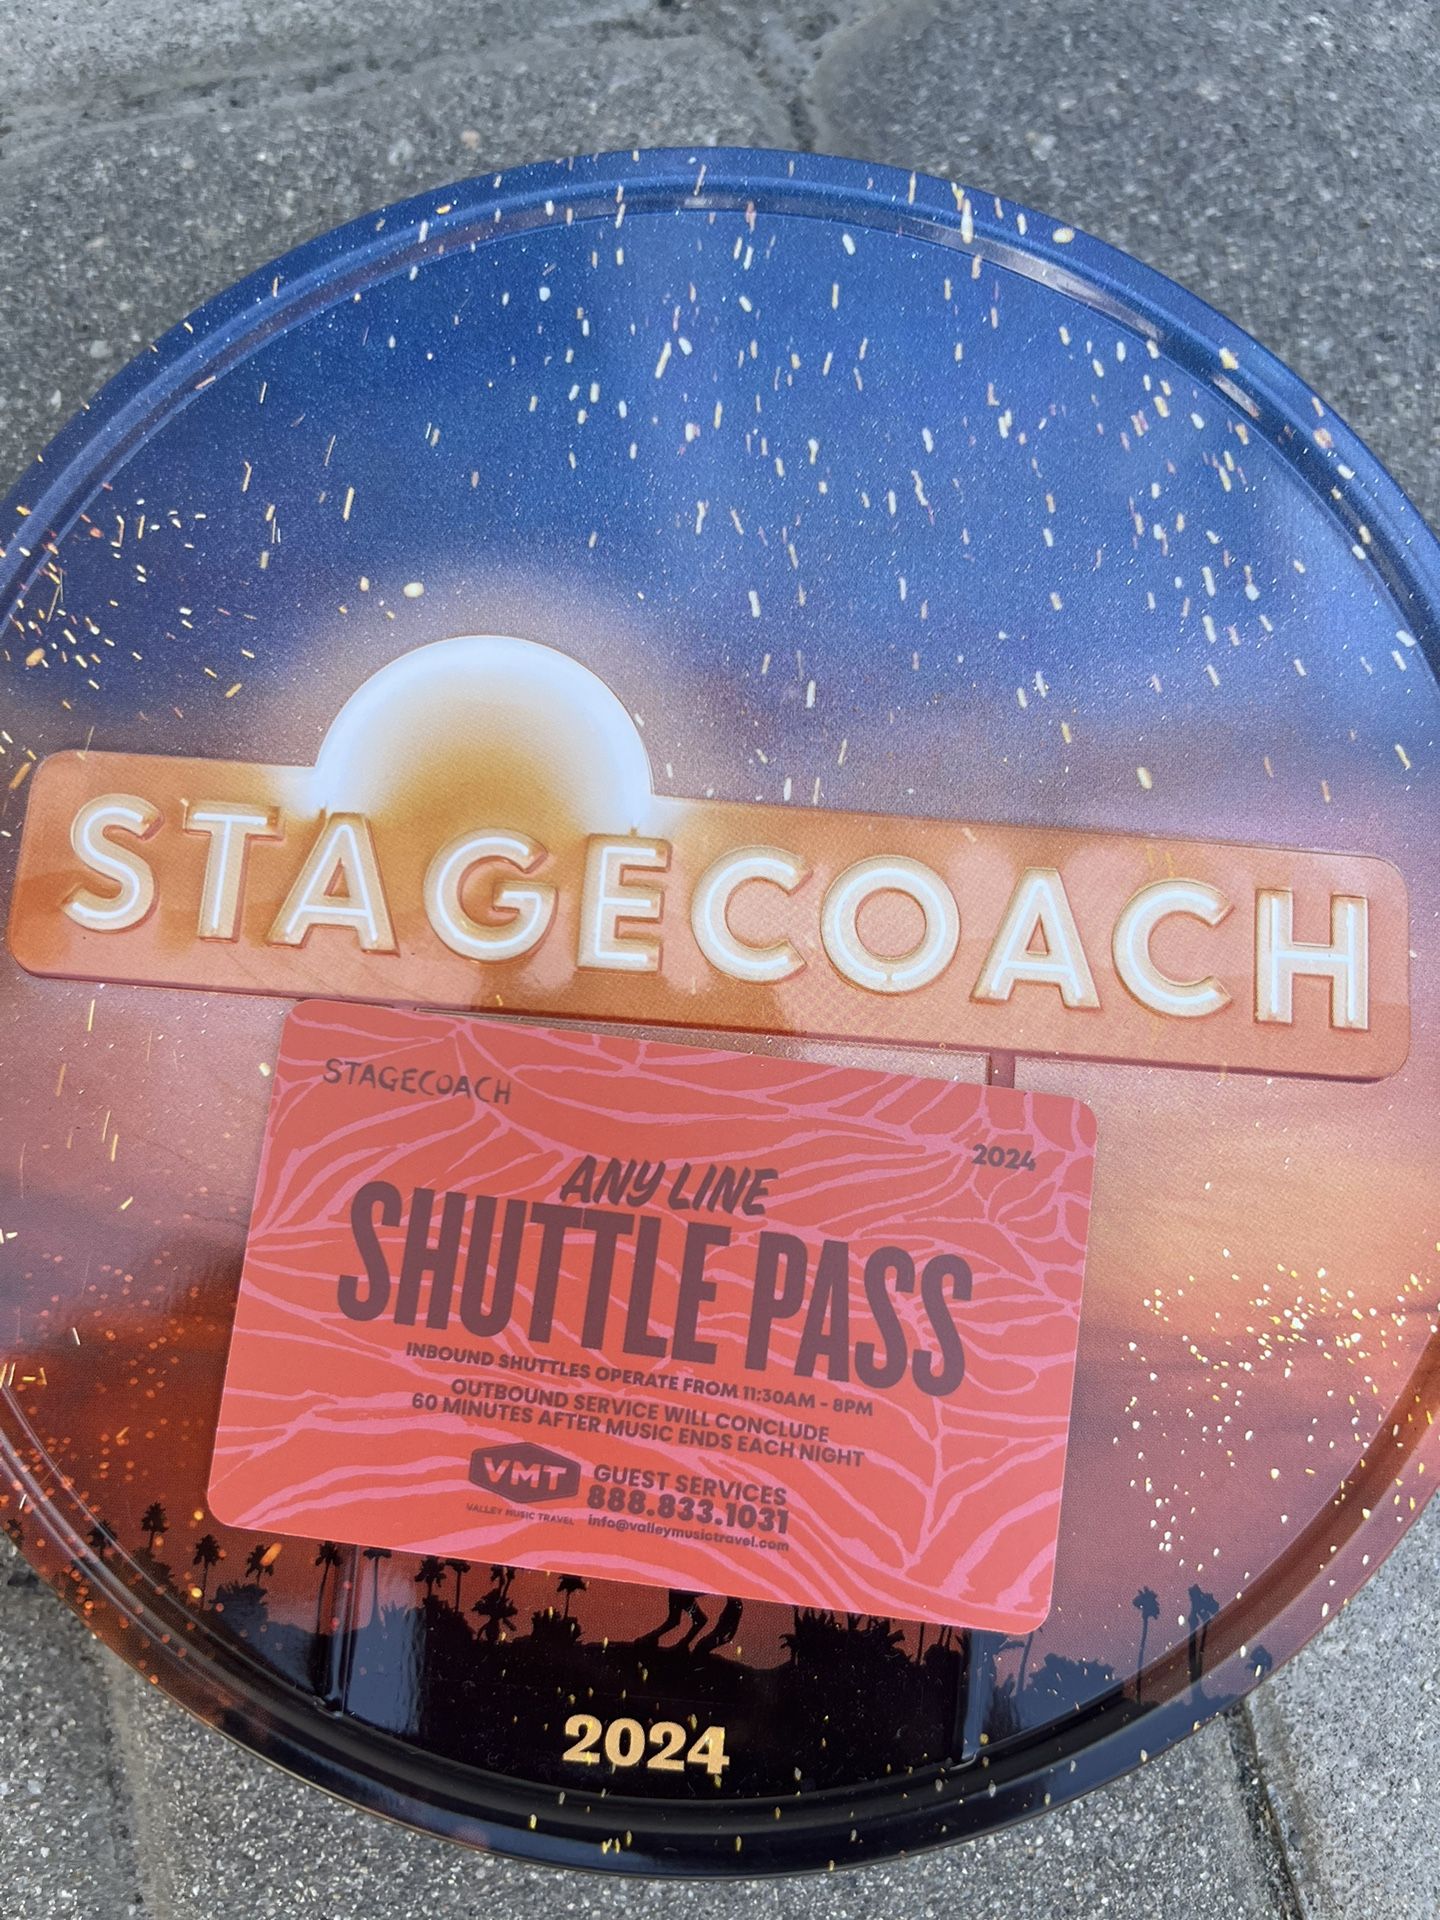 Stagecoach Shuttle Pass 2024